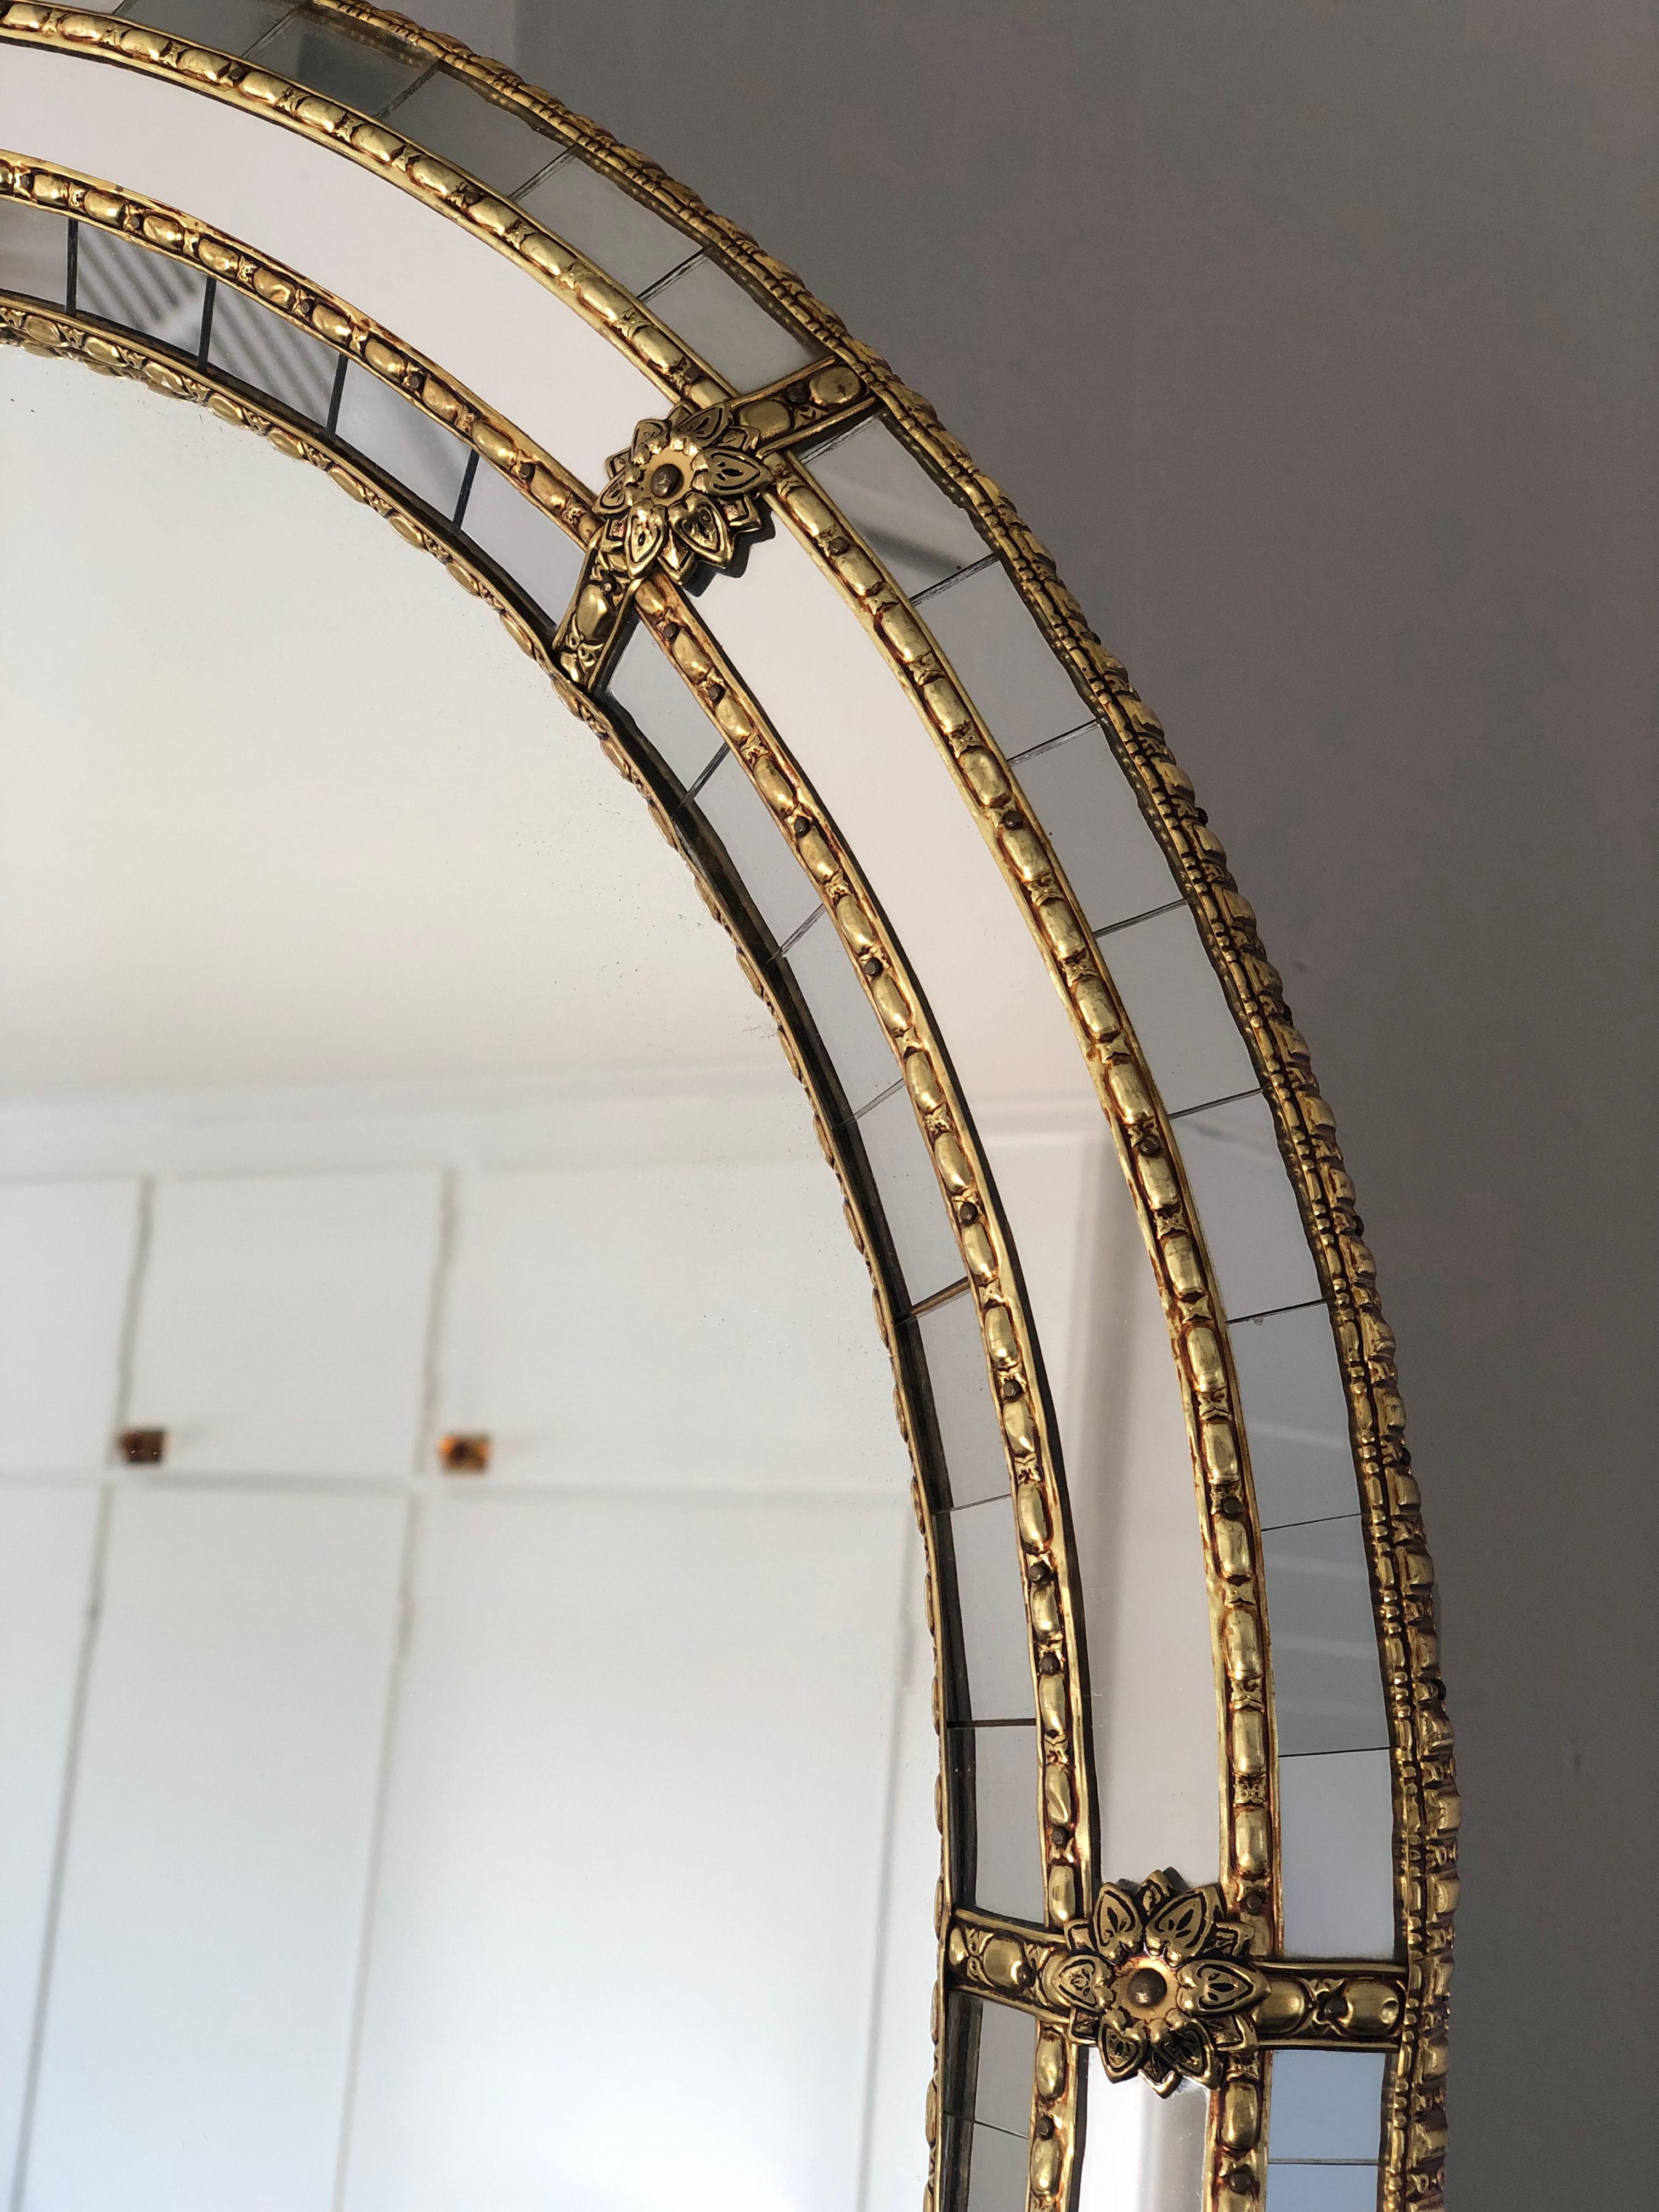 Schöner großer spanischer Spiegel mit einem Rahmen aus venezianischem Glas mit einem goldenen Messingstreifen. Der Rahmen ist mit kleinen Kristallen außen und innen und größeren Kristallen in der Mittellinie versehen. Der Messingstreifen hält die